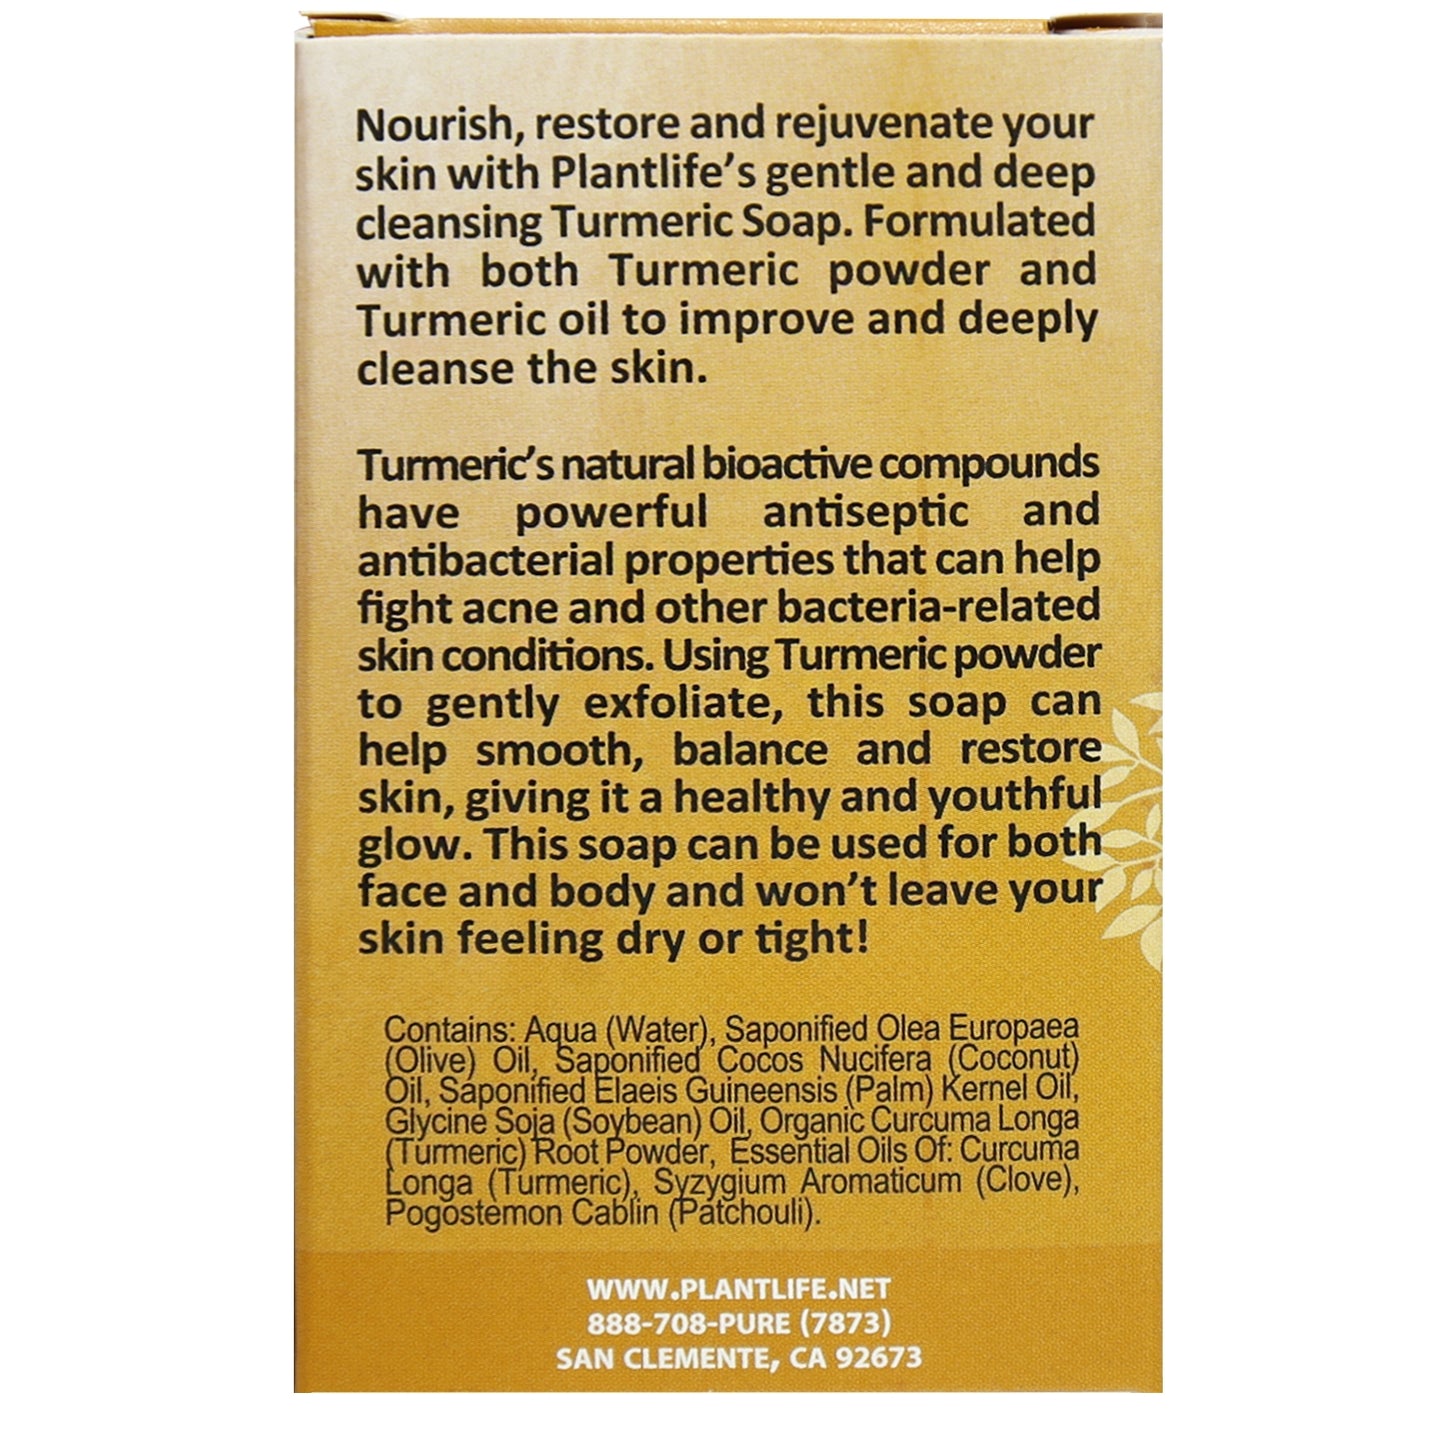 Turmeric Herbal Soap Sample